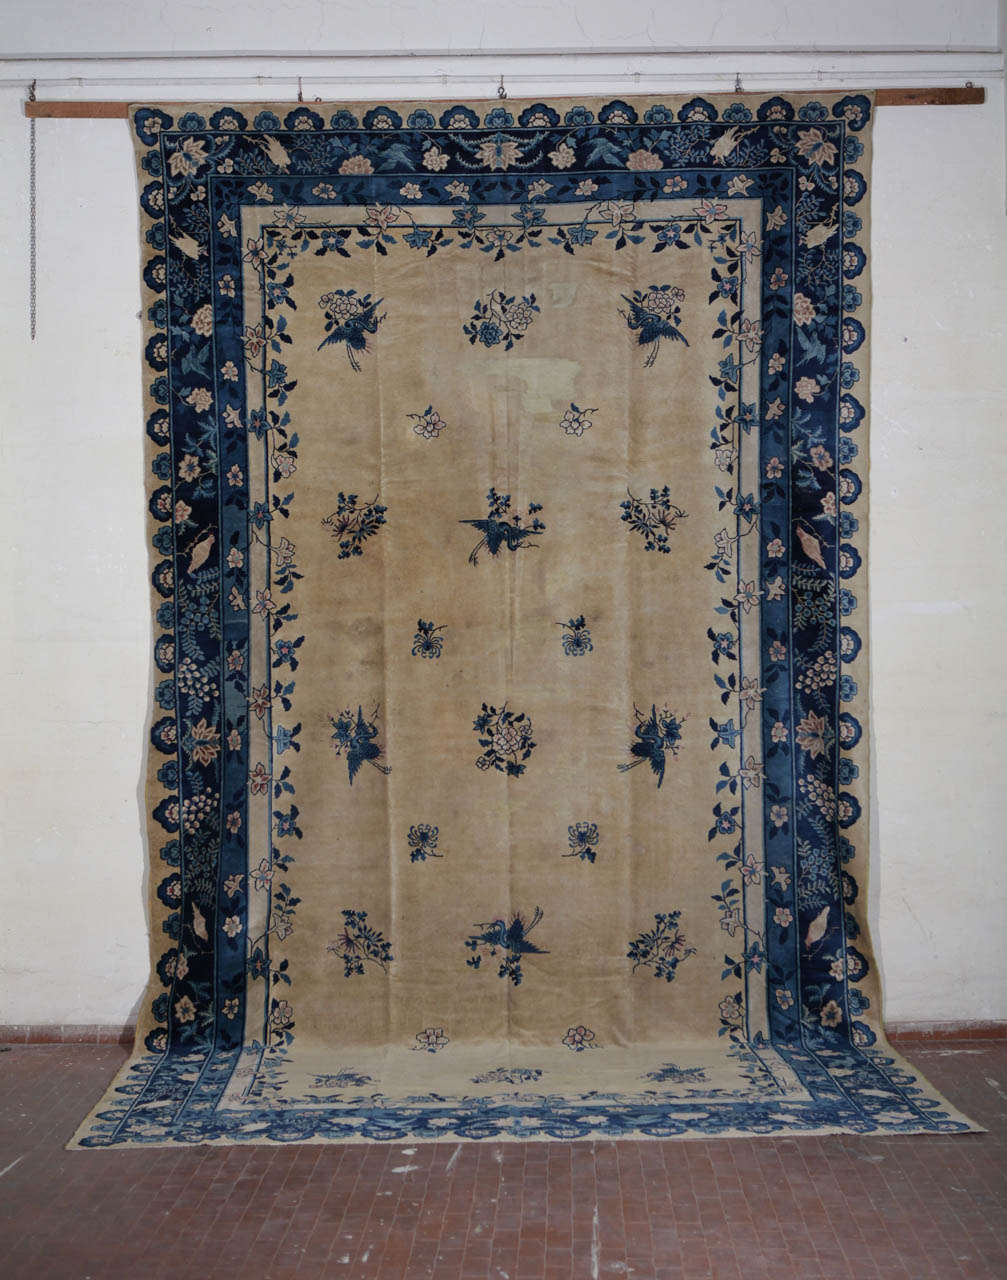 Ein chinesischer Teppich 1920 um.
cm 530 x310